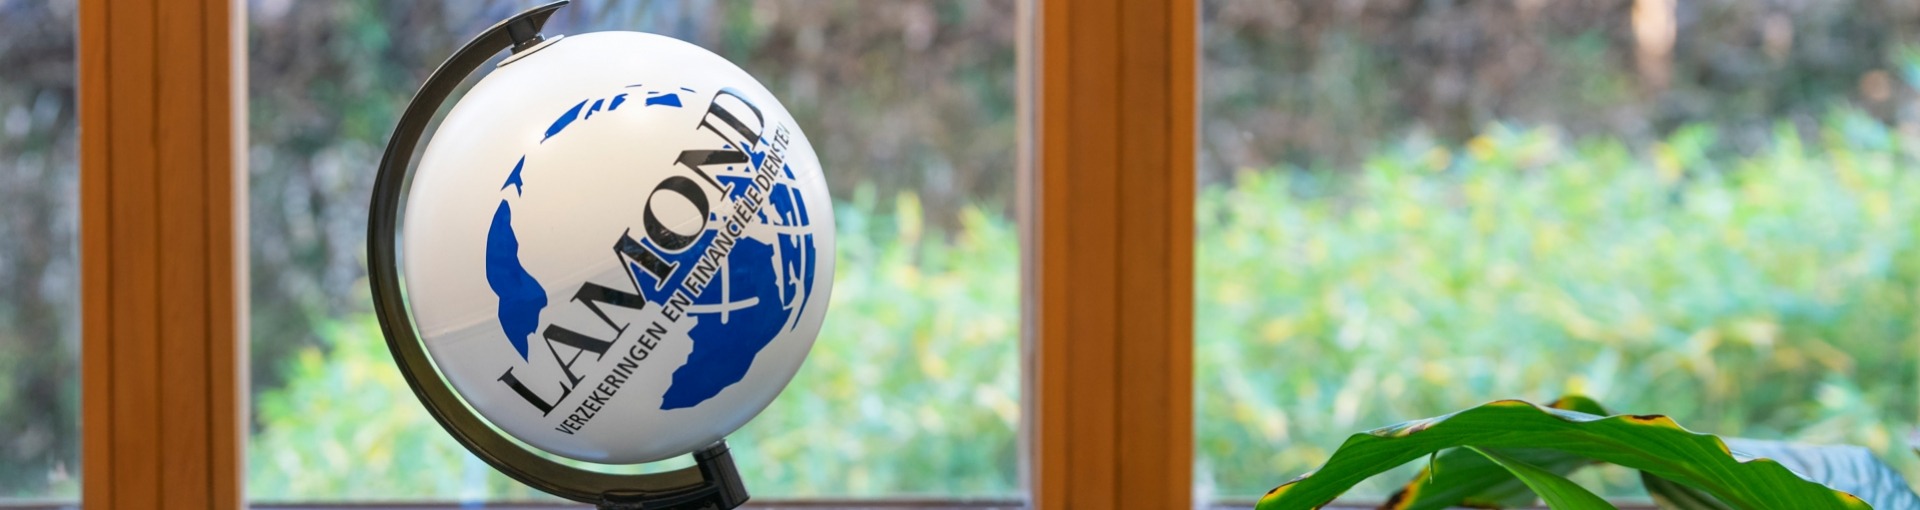 Een kleine wereldbol met daarop het logo van Lamond Verzekeringen & Financiële Diensten